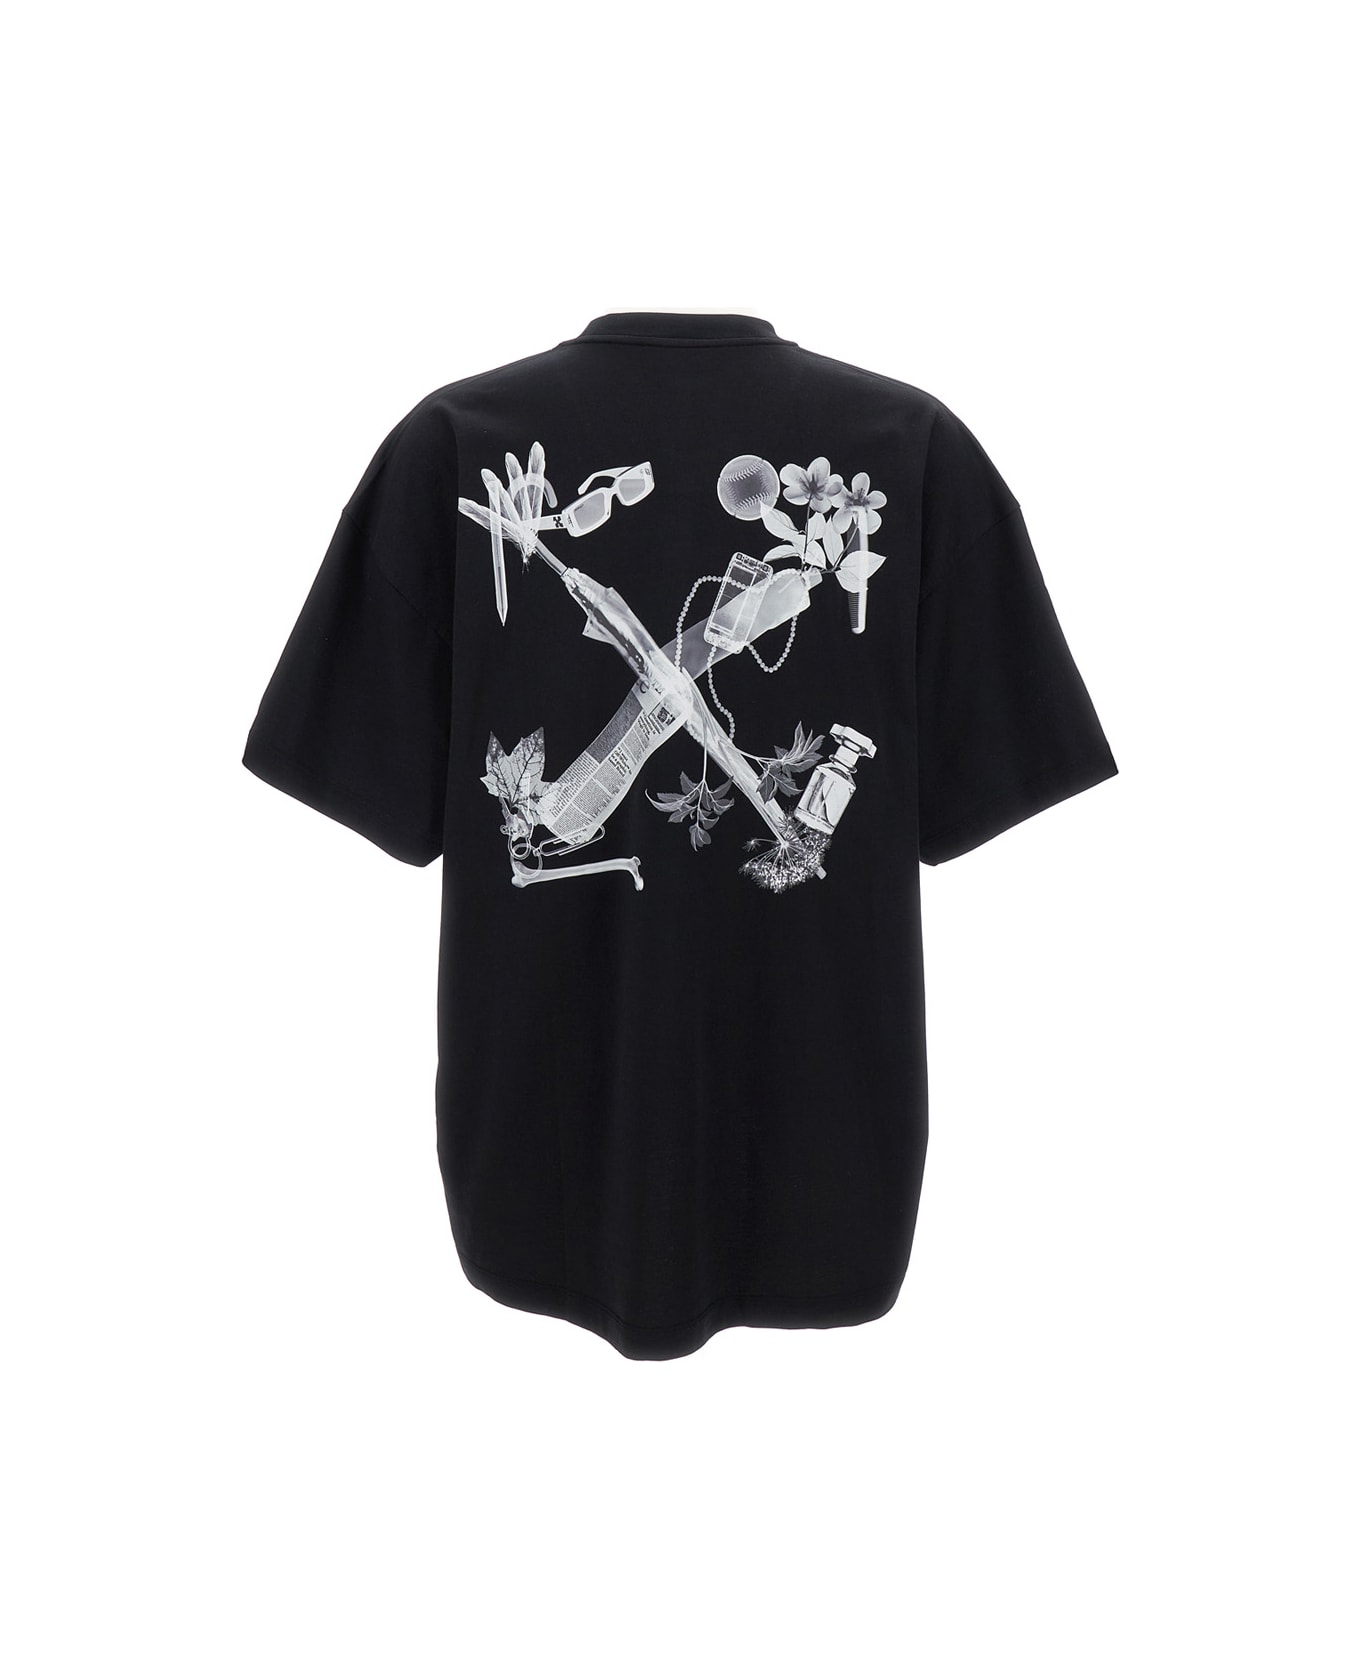 Off-White Scan Arrow Over T-shirt - Black Melange Grey